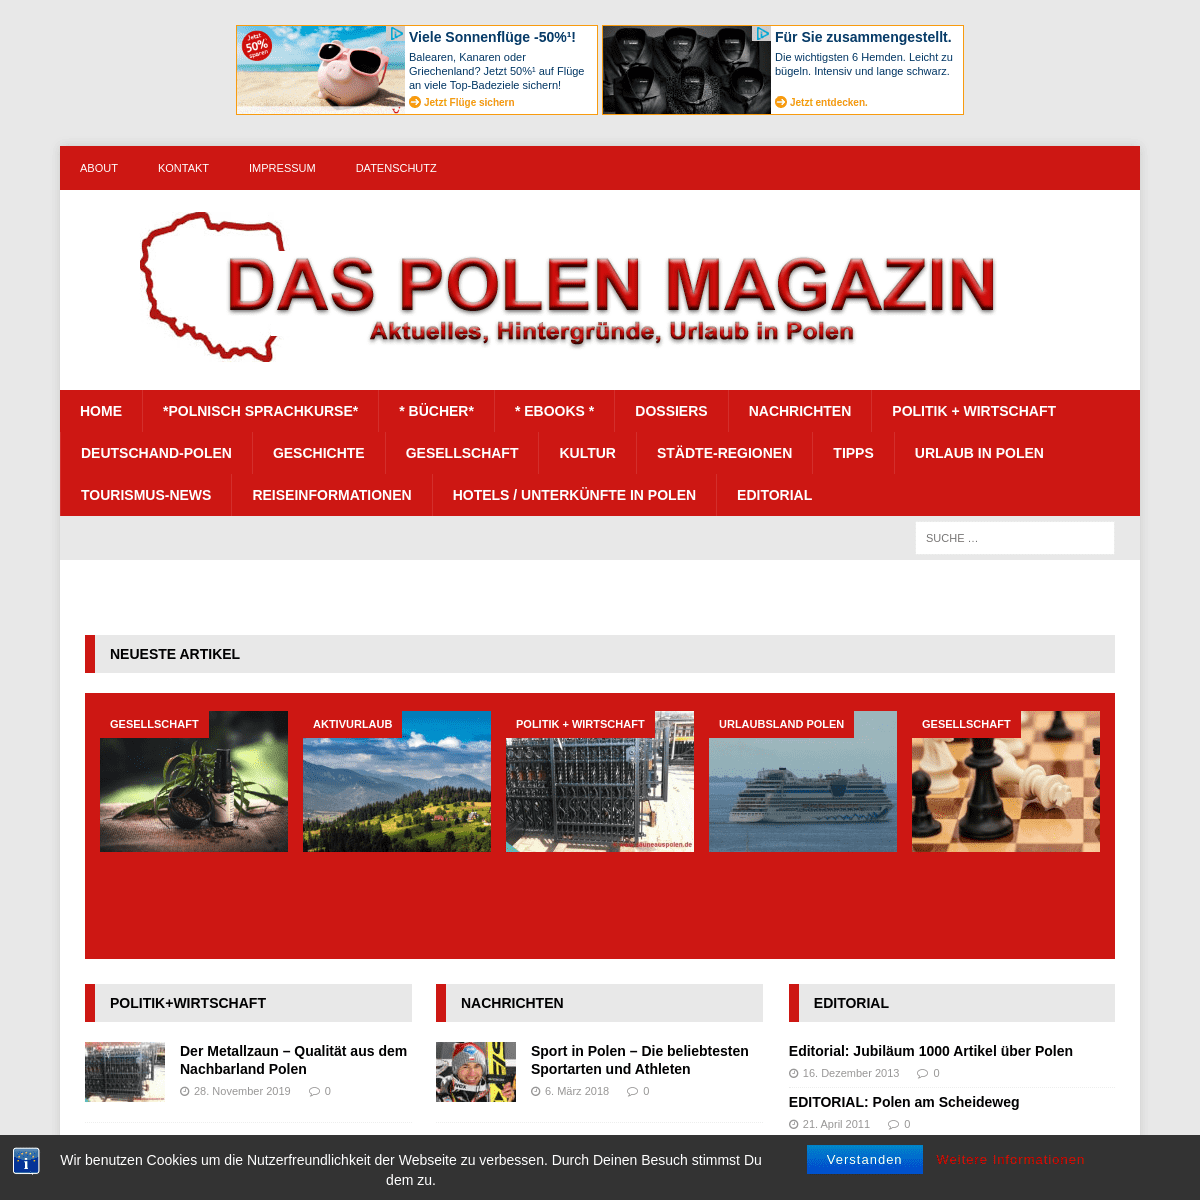 A complete backup of das-polen-magazin.de